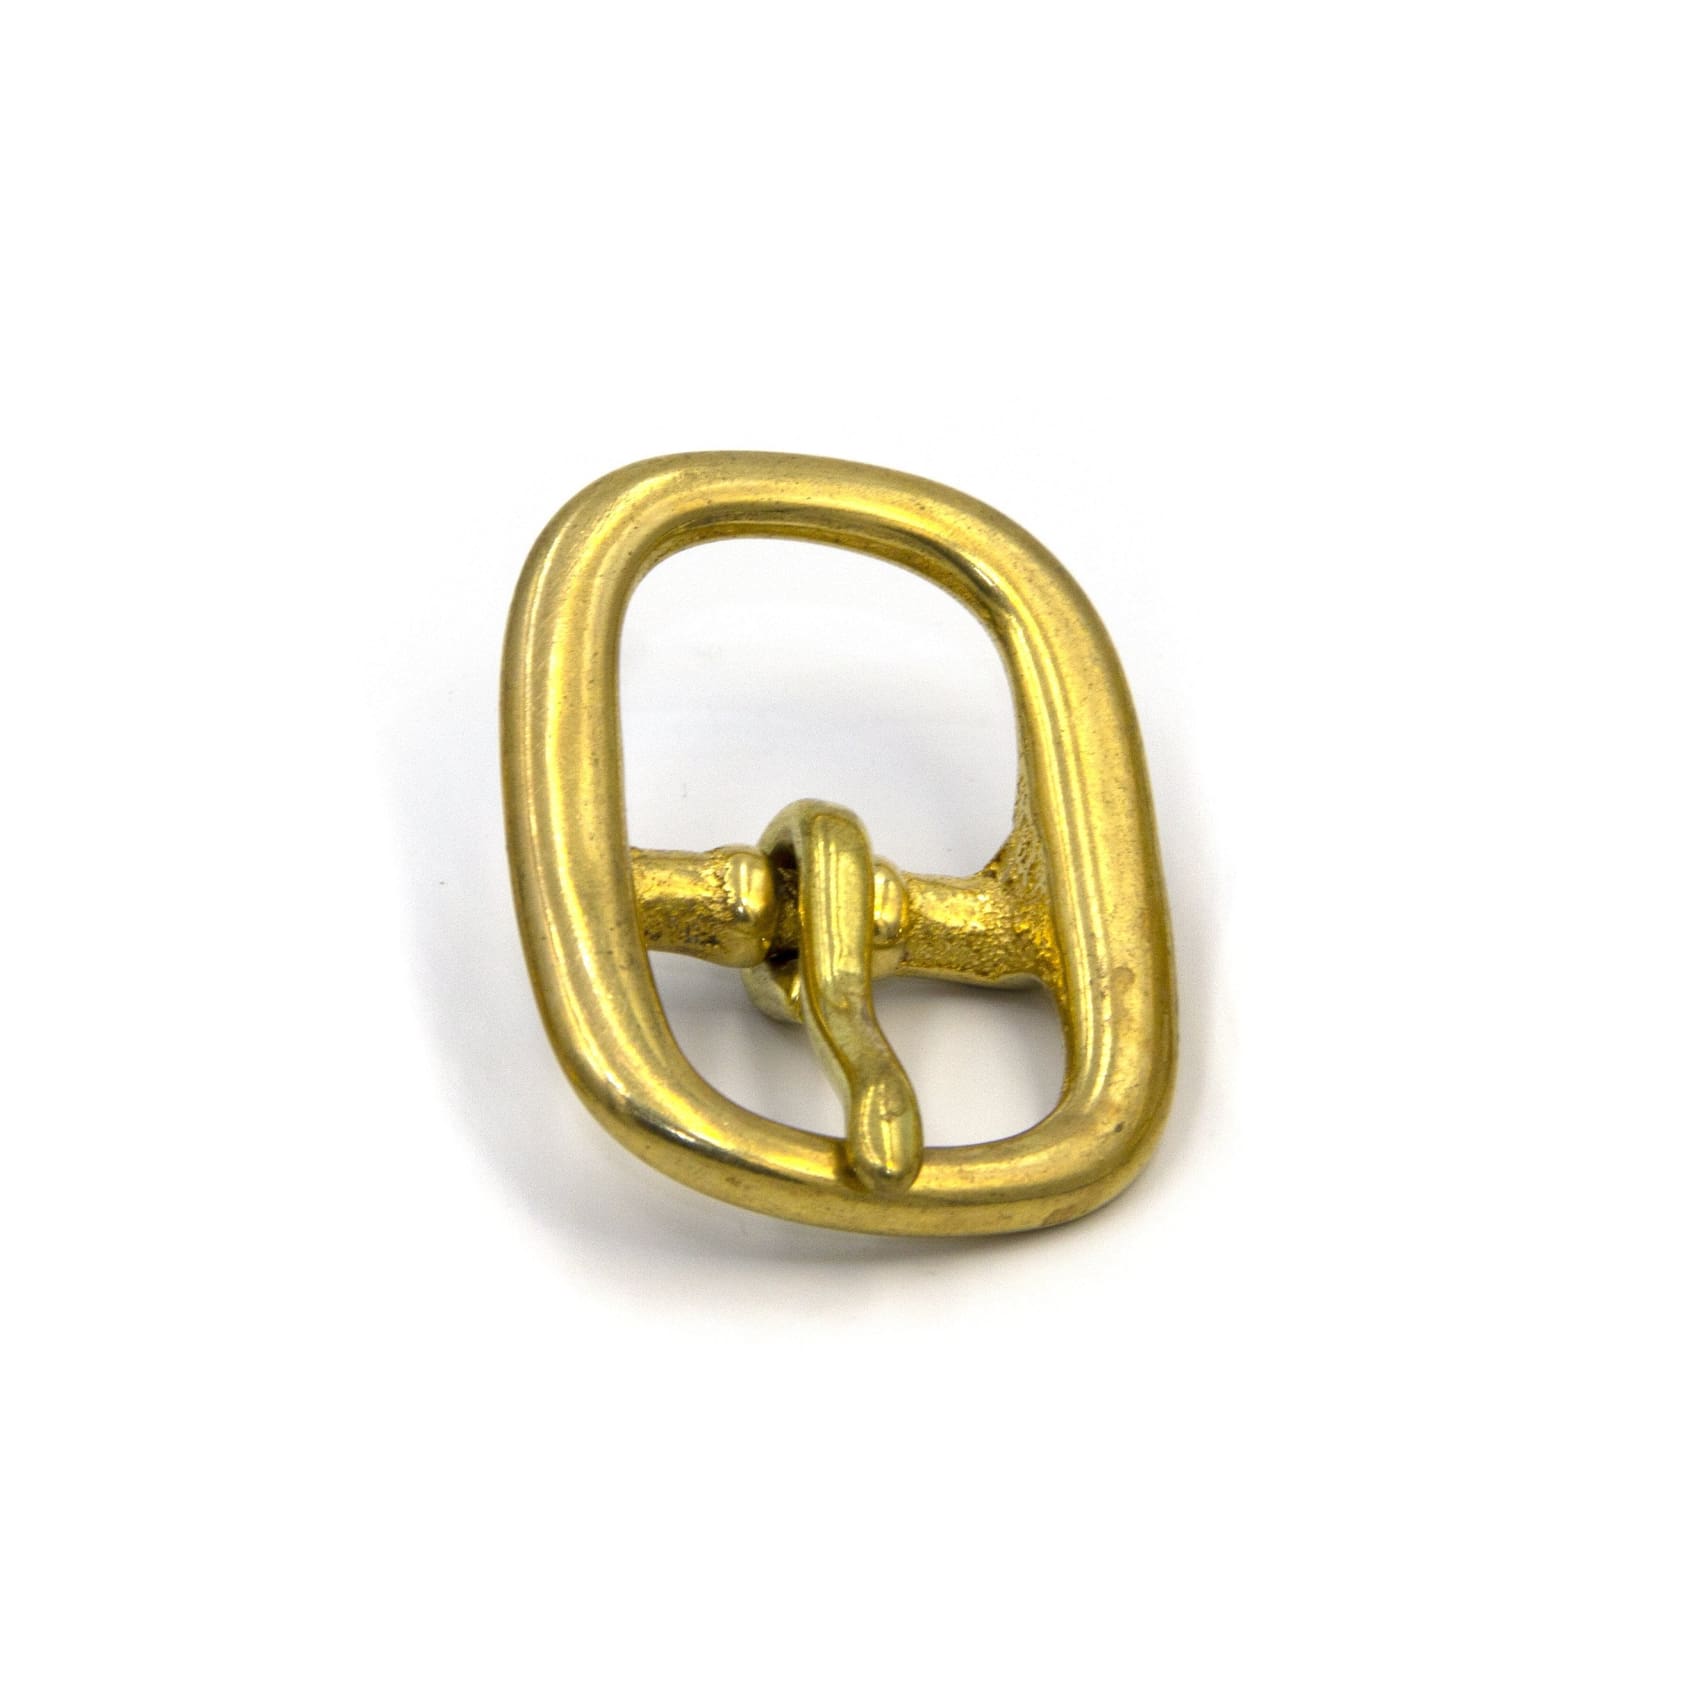 26mm Brass Pin Buckle Women Belts Accessories - Metal Field Shop